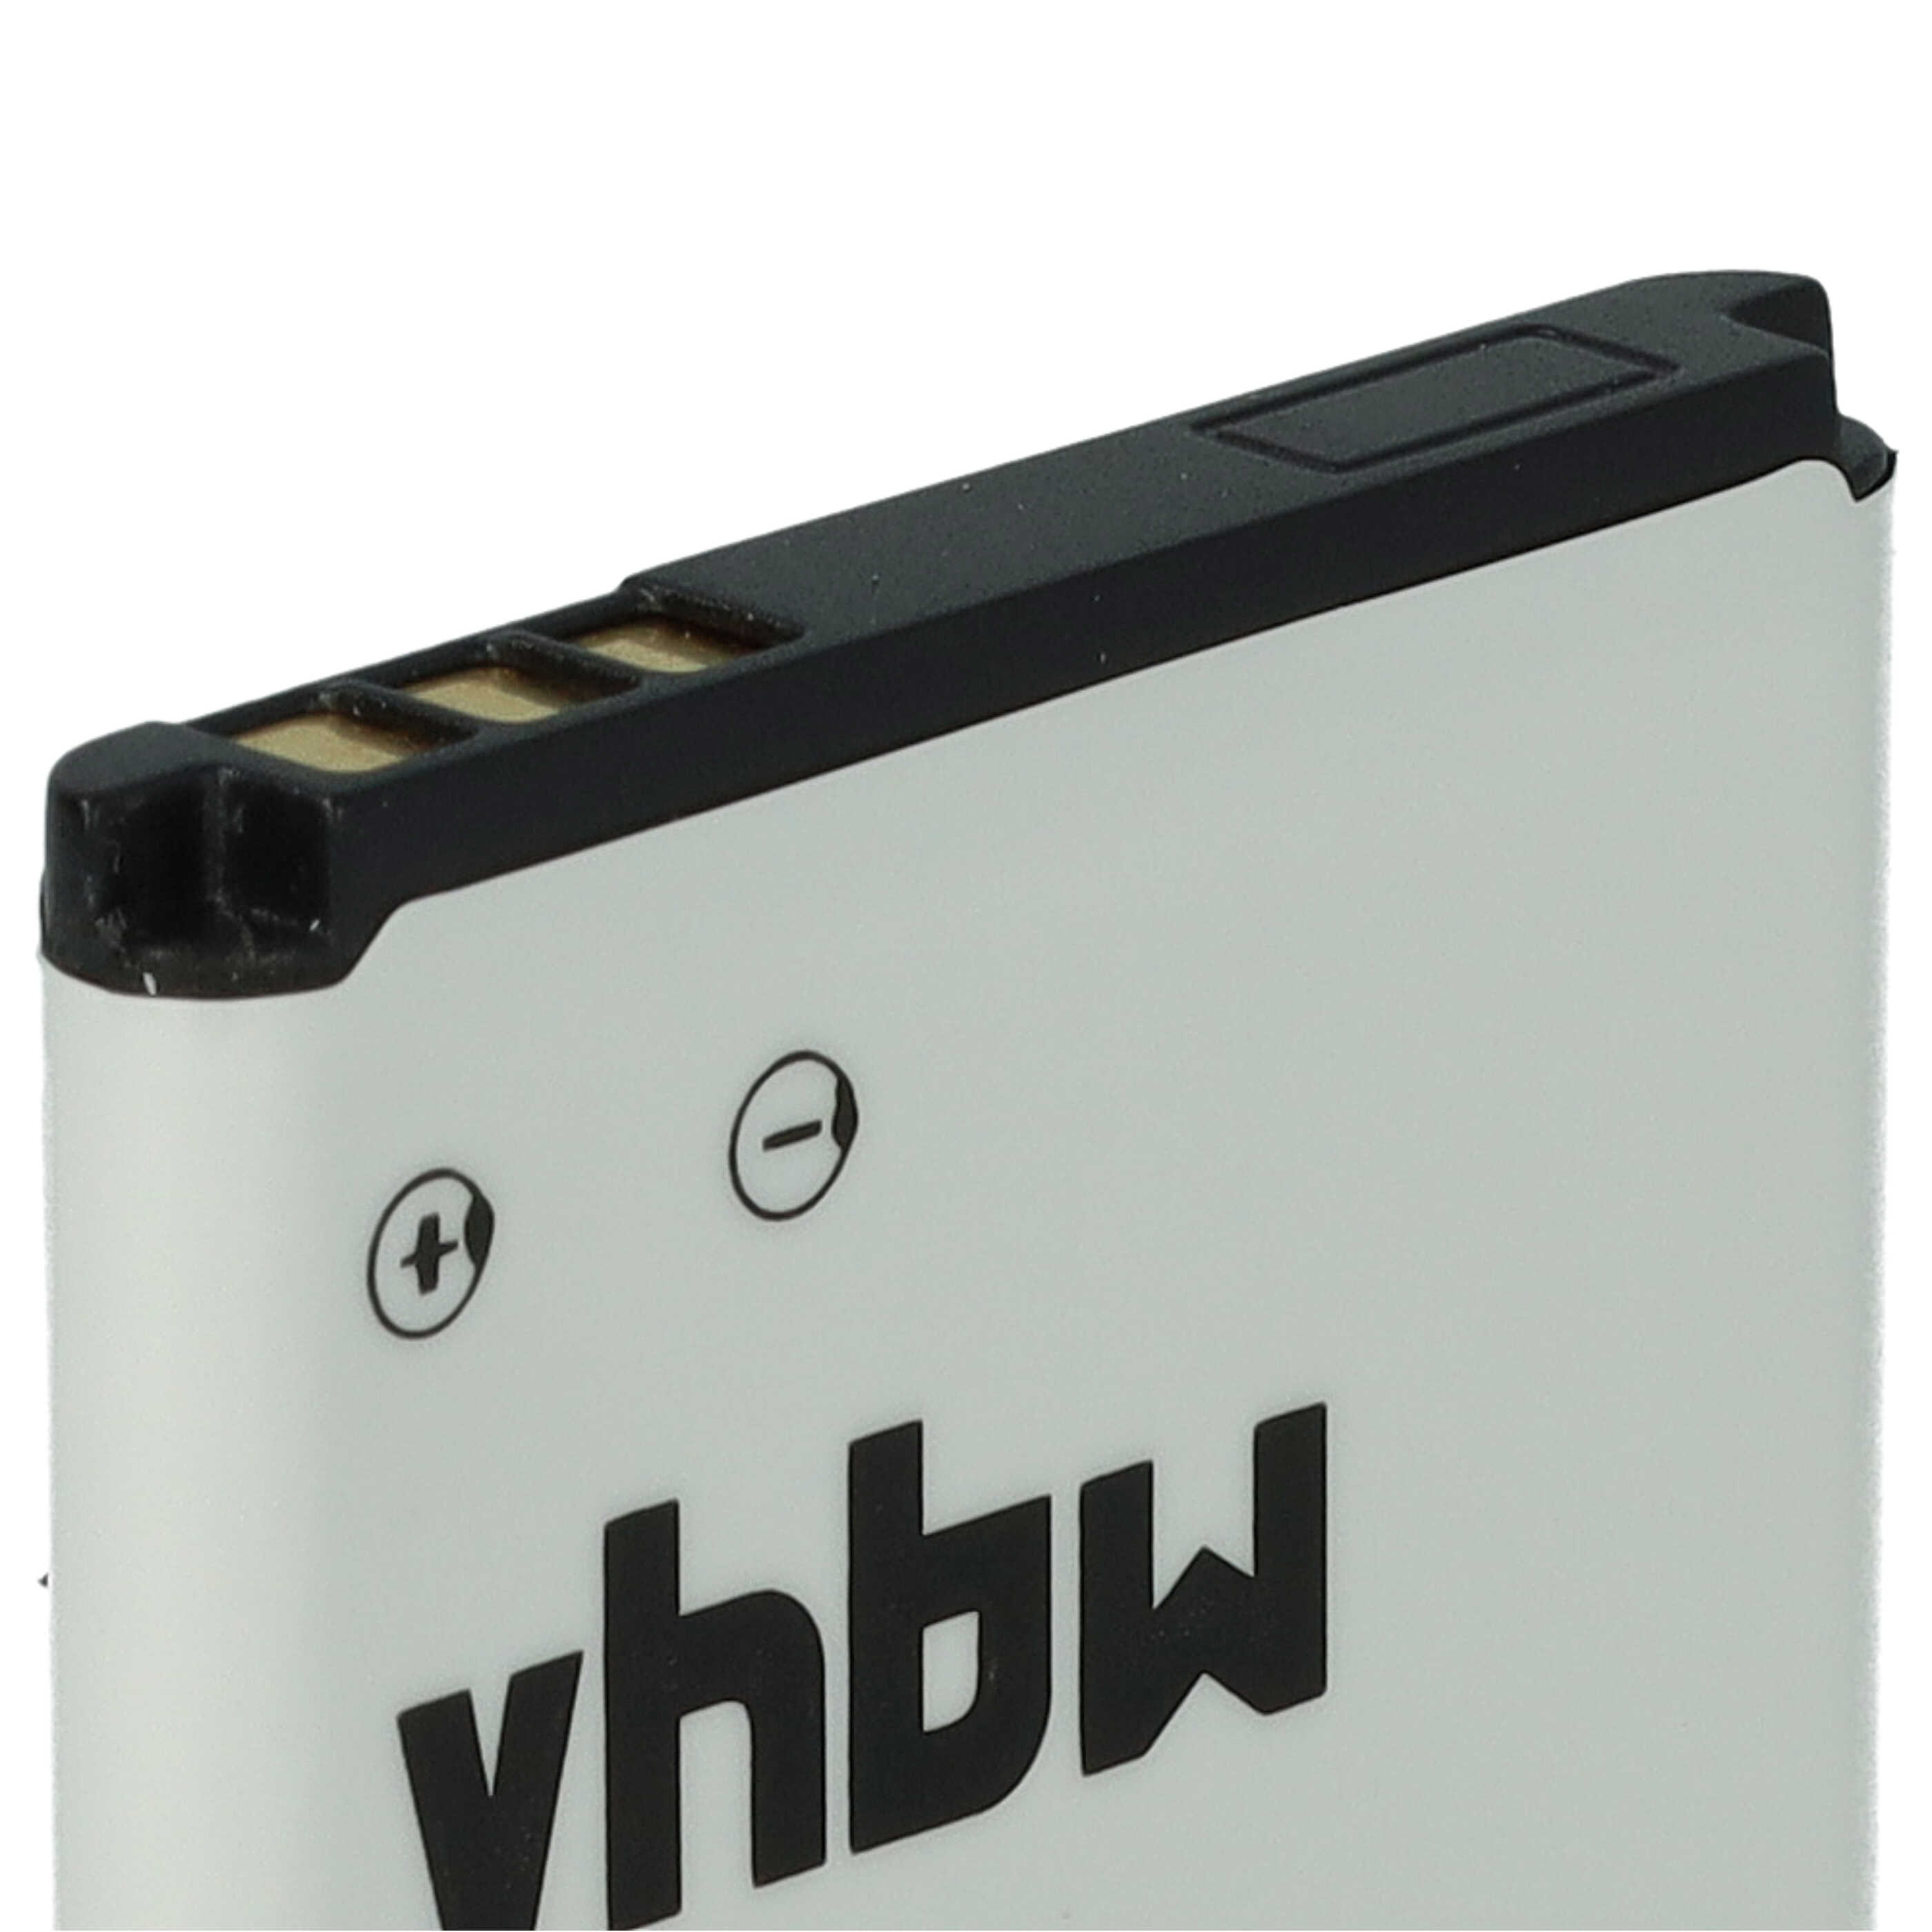 Batterie remplace Blu N4C600T pour téléphone portable - 900mAh, 3,7V, Li-ion